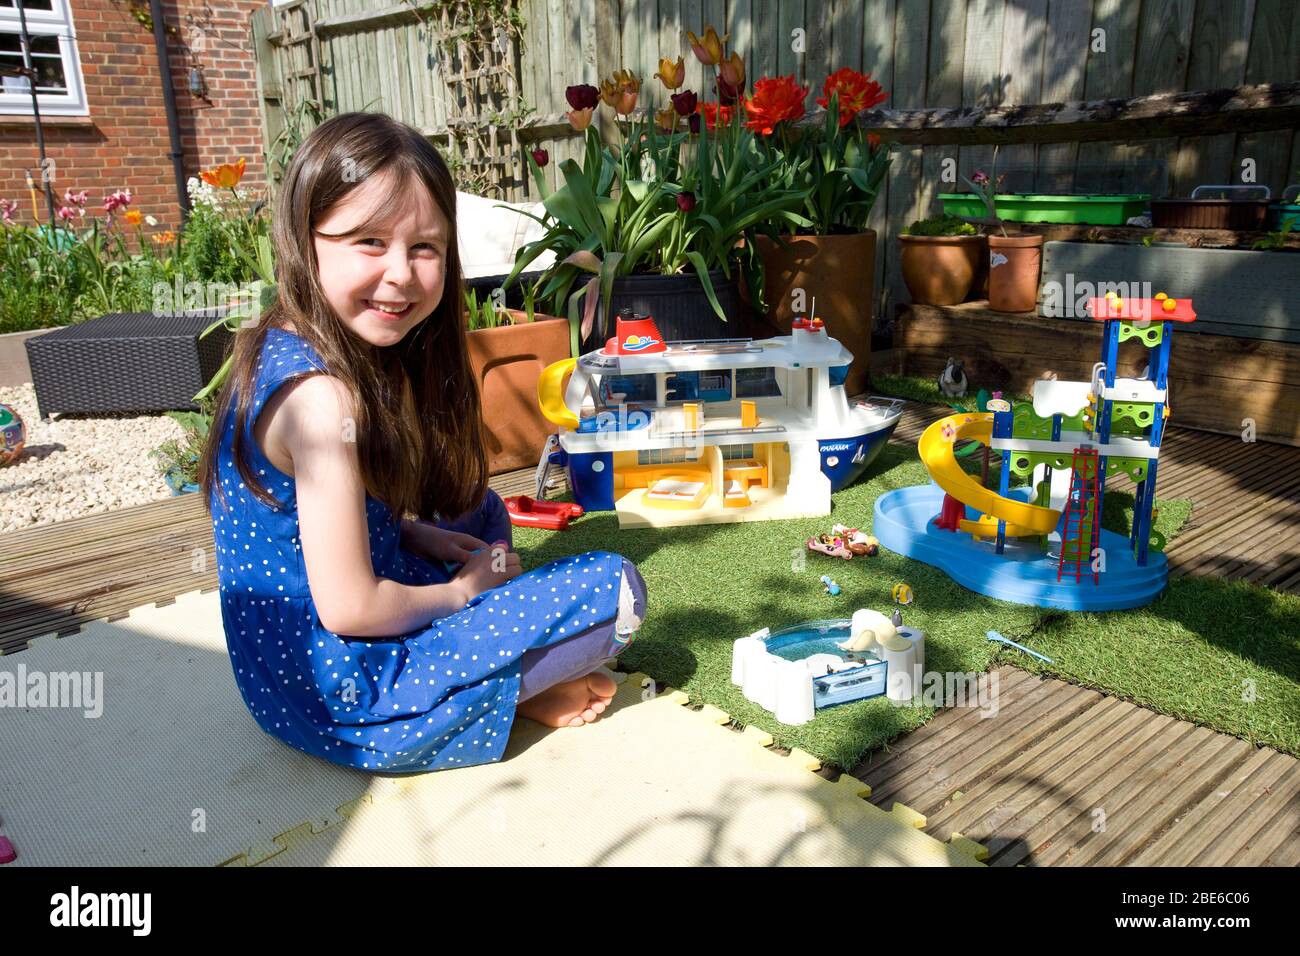 Junges Mädchen spielt mit playmobil im Garten Stockfotografie - Alamy